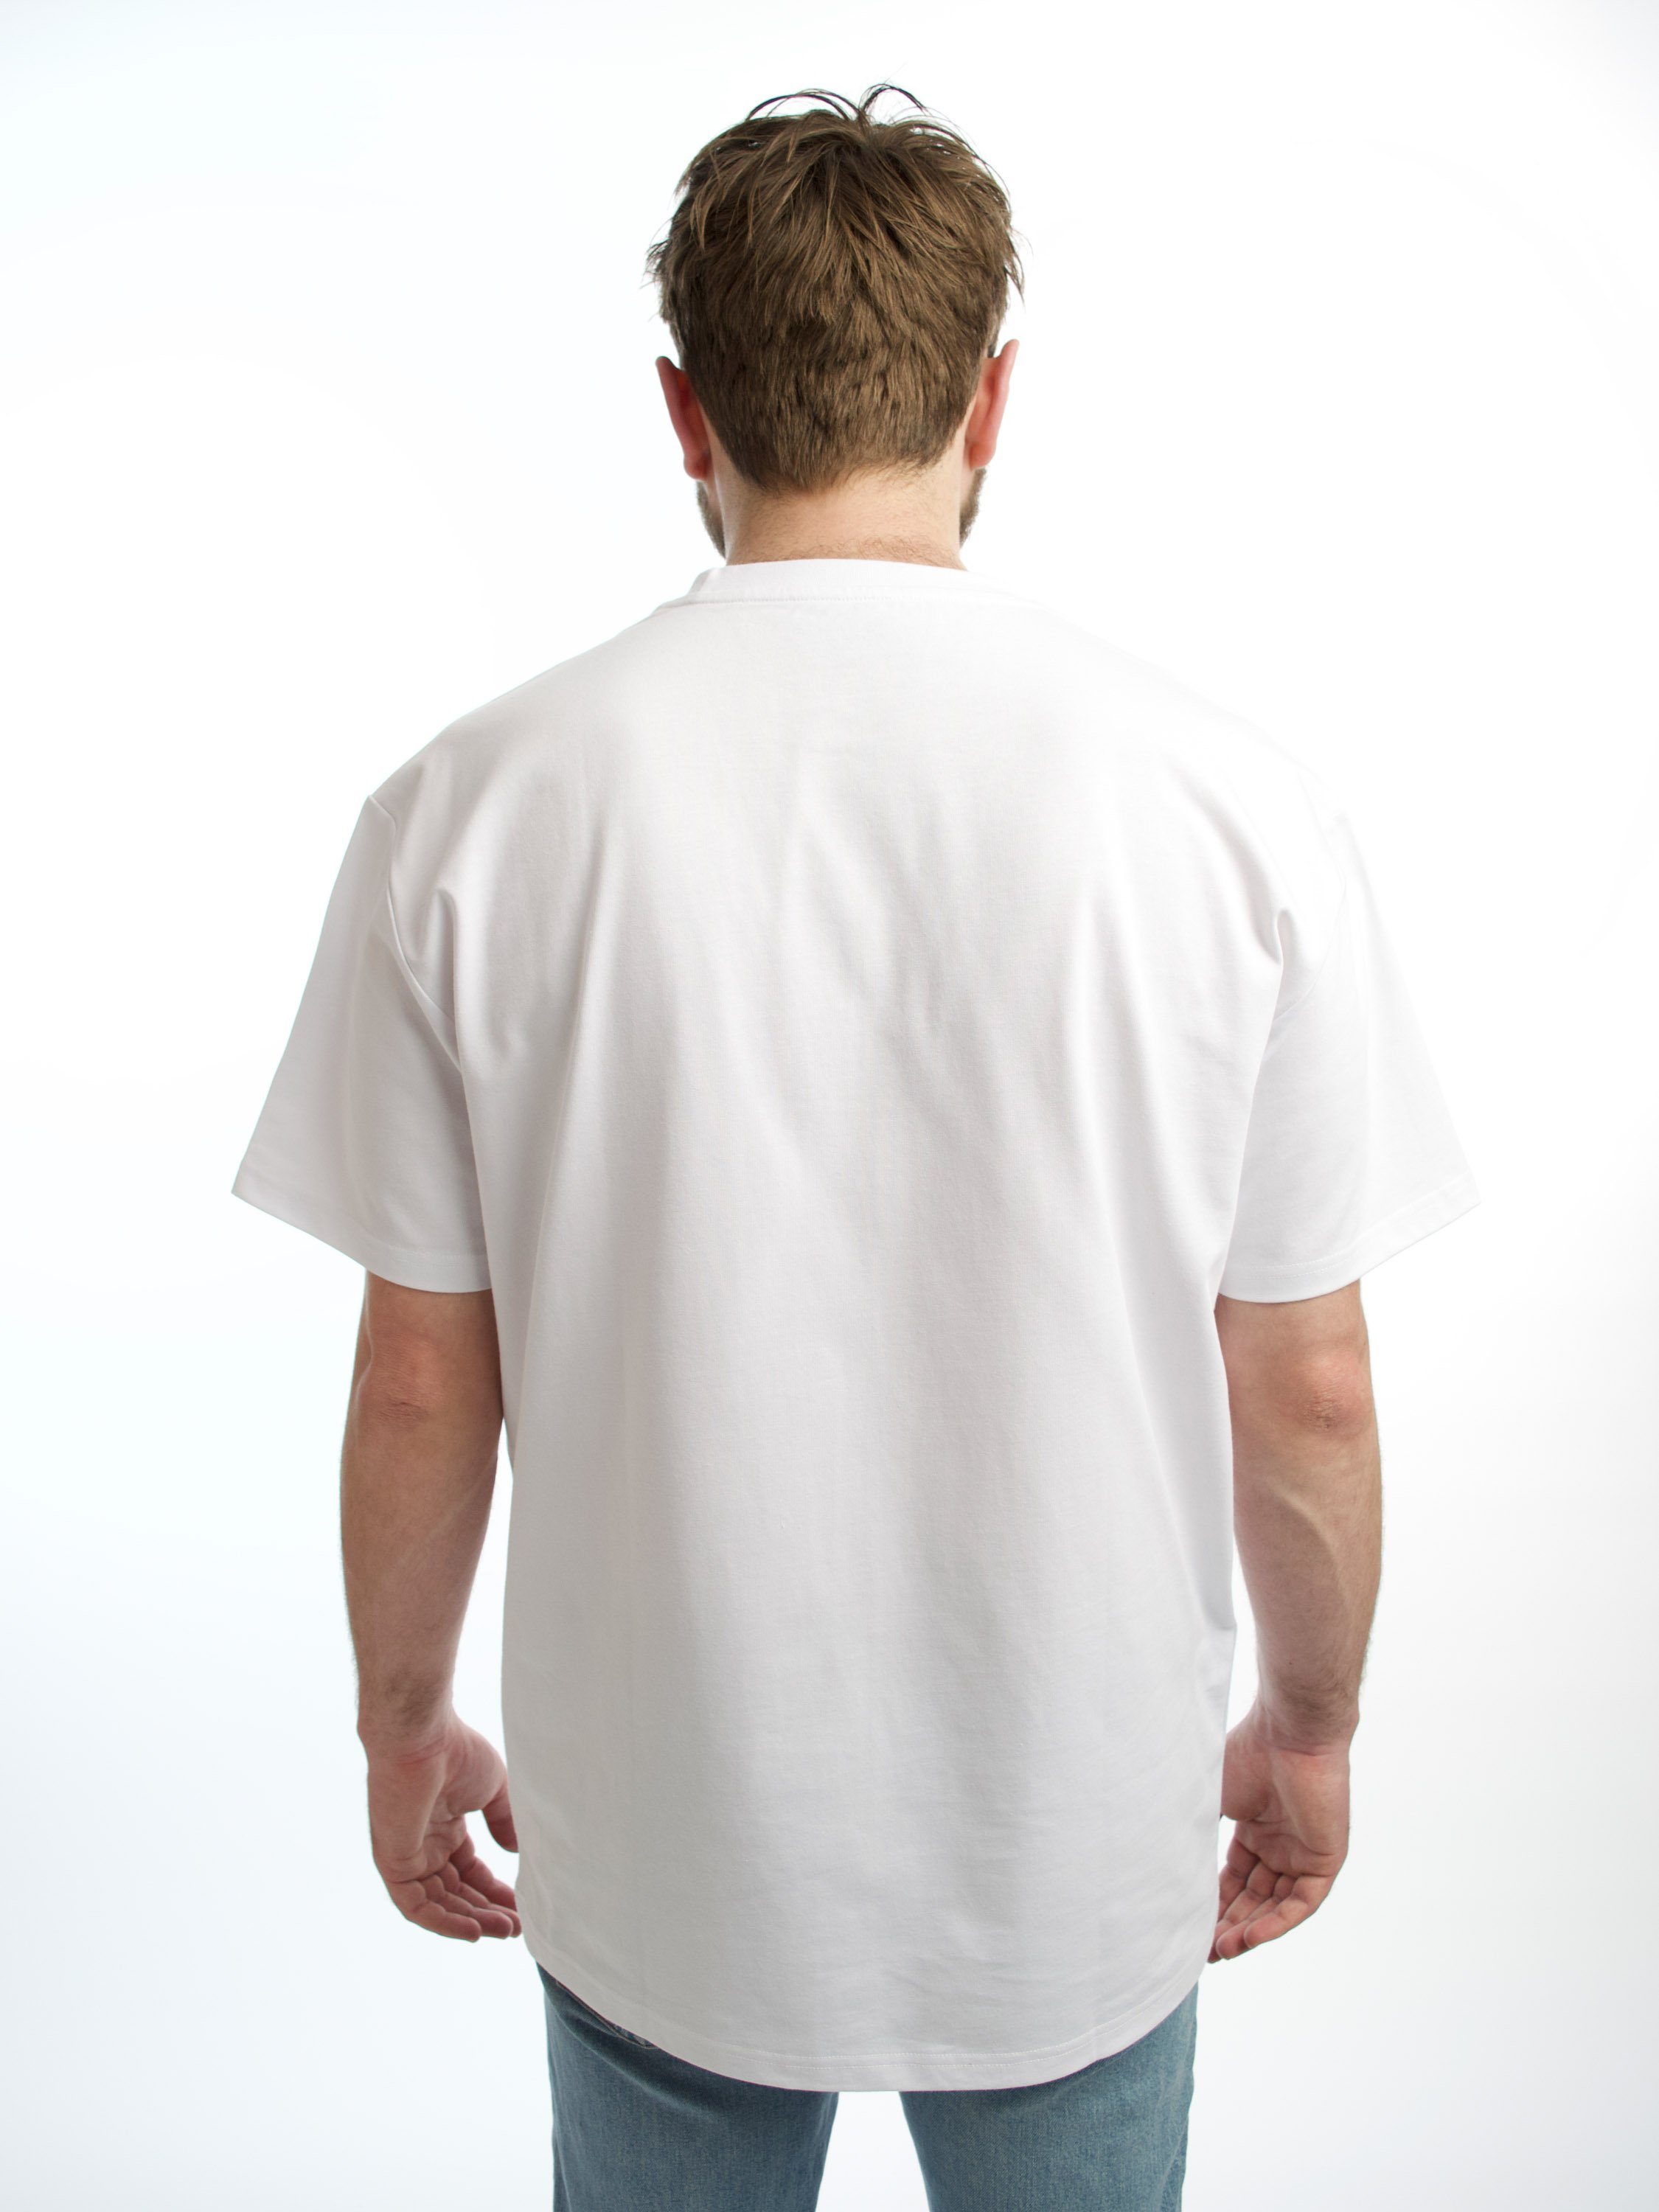 HONEST BASICS Rundhalsshirt OG Shirt aus OCS und GRS Bio-Baumwolle weiß zertifizierter